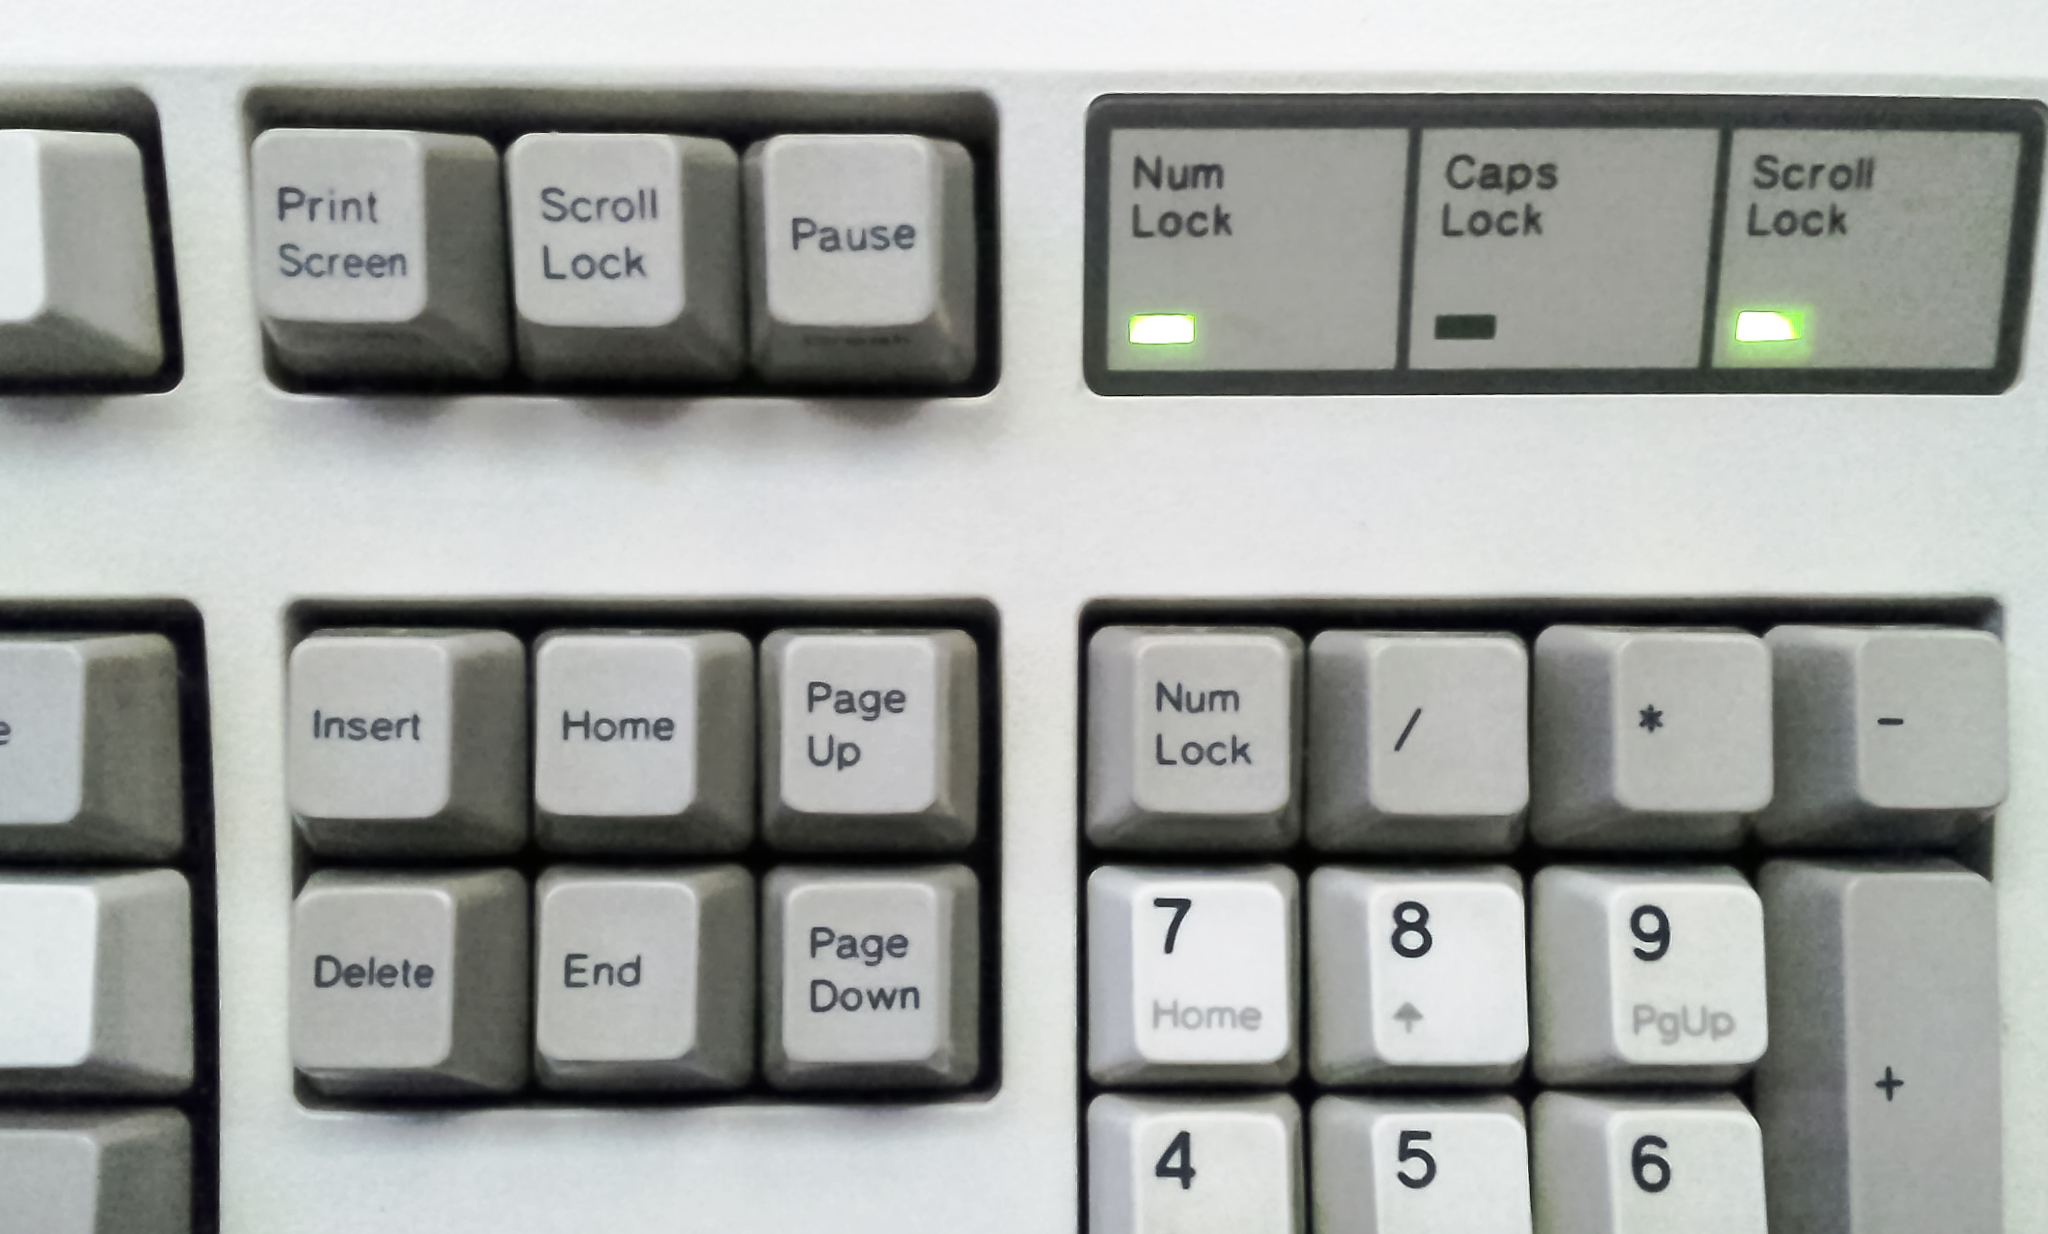 Keyboard with scroll lock key